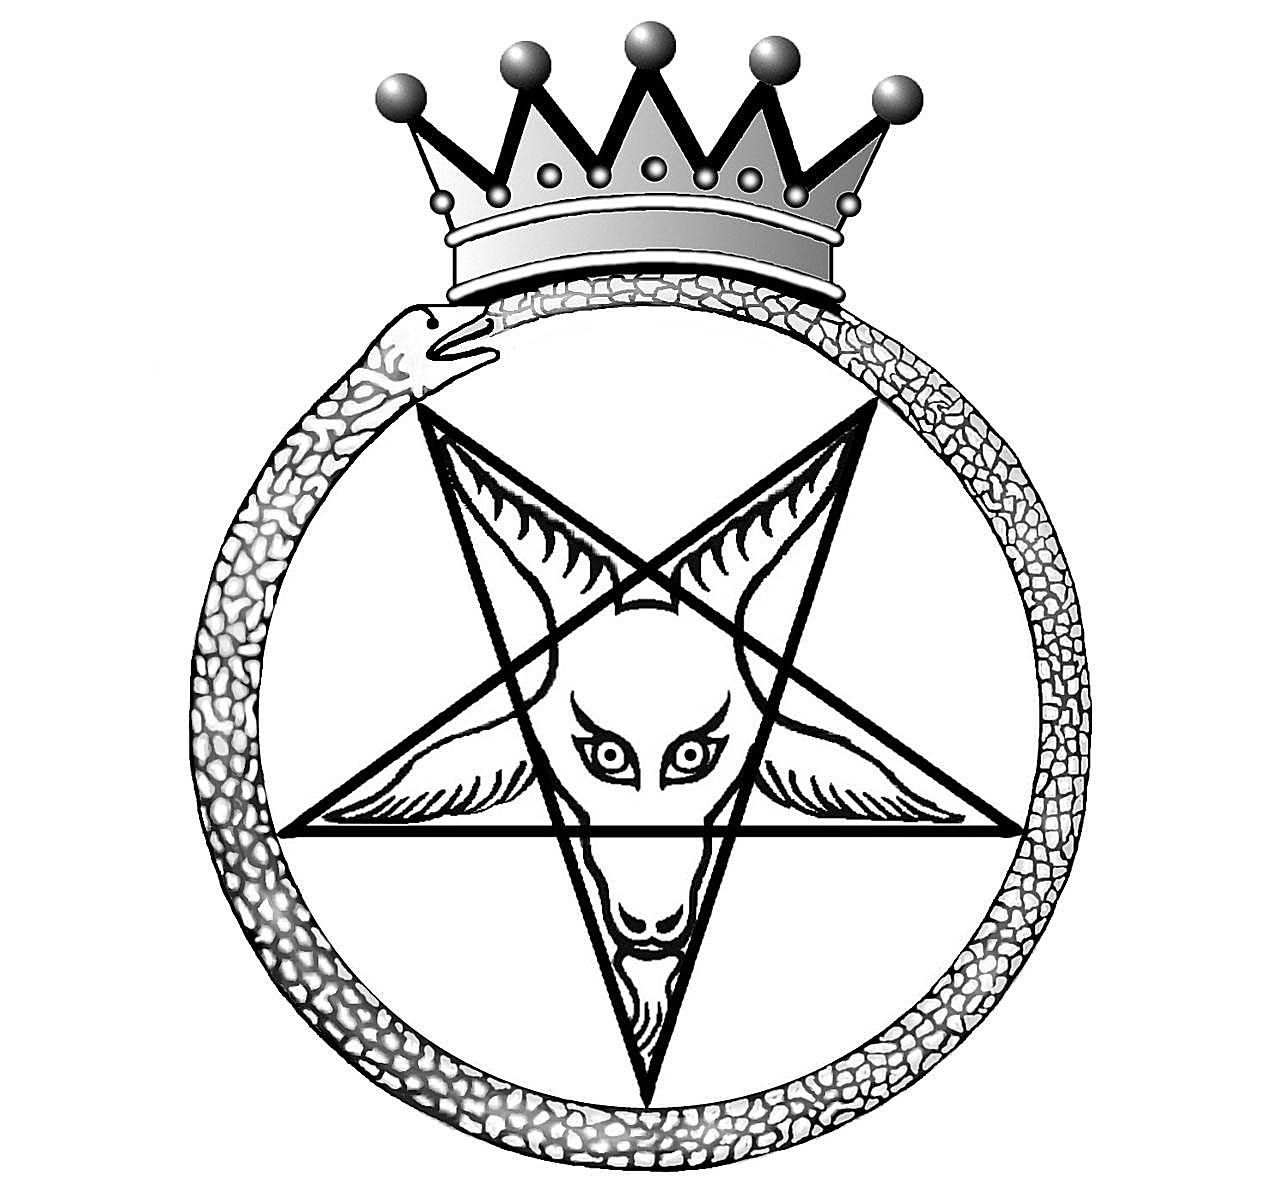 Los príncipes herederos del infierno en el satanismo de LaVeyan